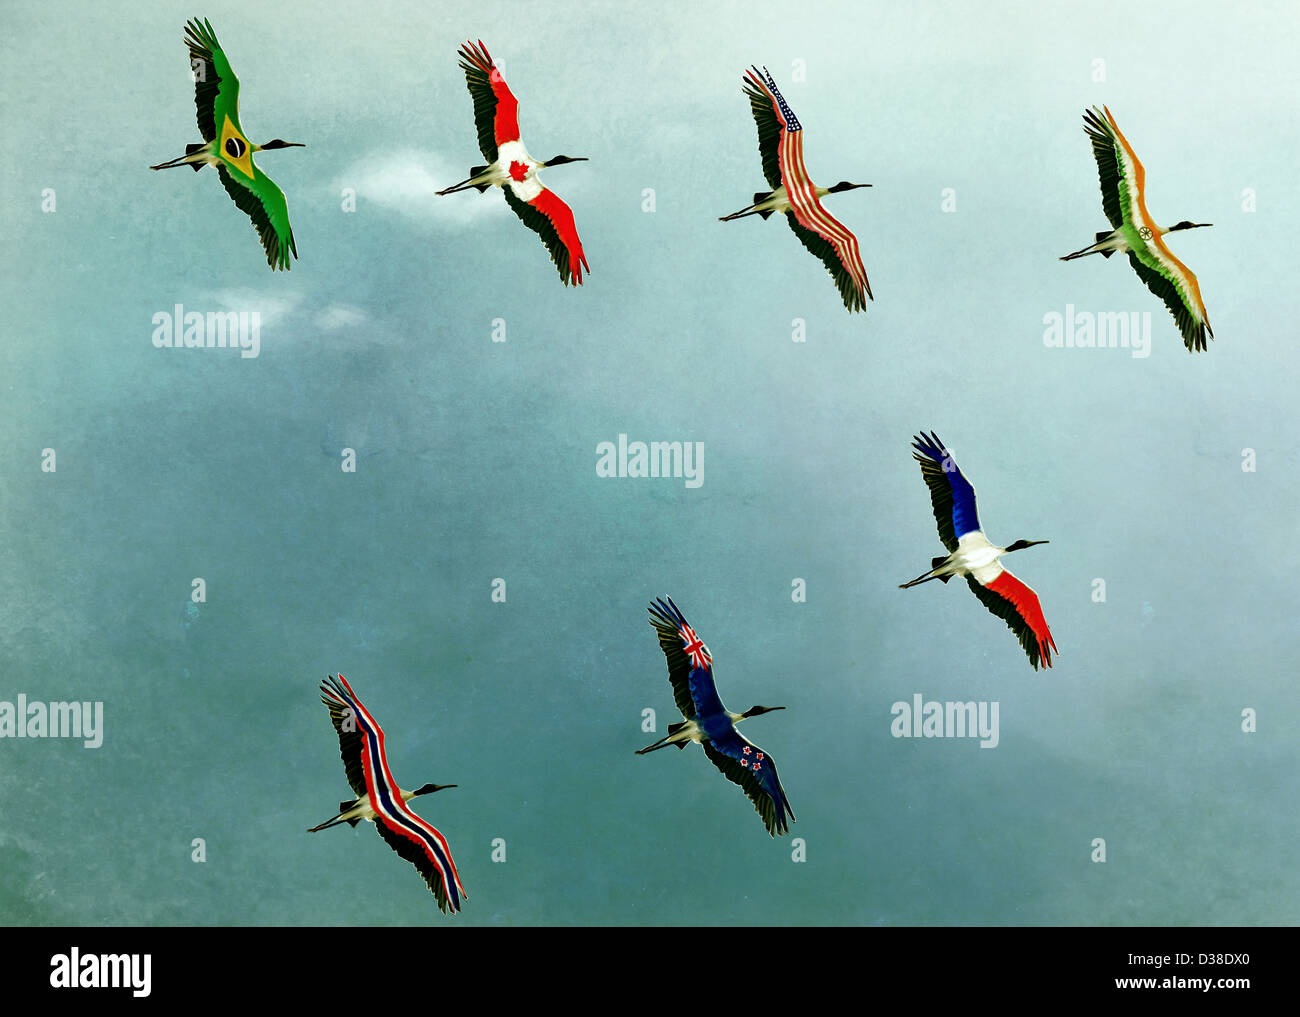 Anschauliches Bild der Vögel im Himmel, globales Geschäft darstellt Stockfoto